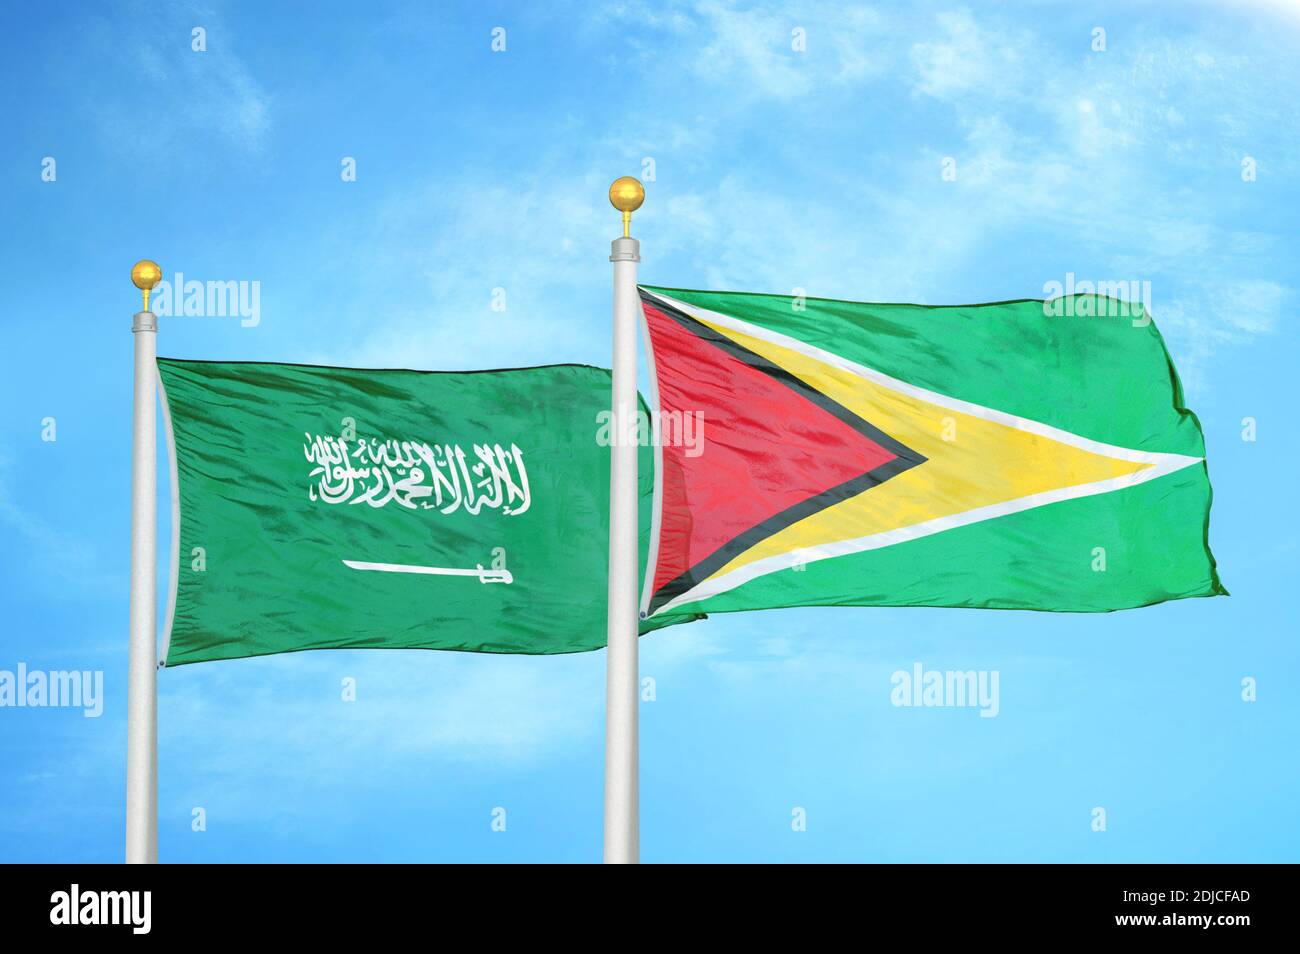 Saudi-Arabien und Guyana zwei Flaggen auf Fahnenmasten und blau wolkiger Himmel Stockfoto